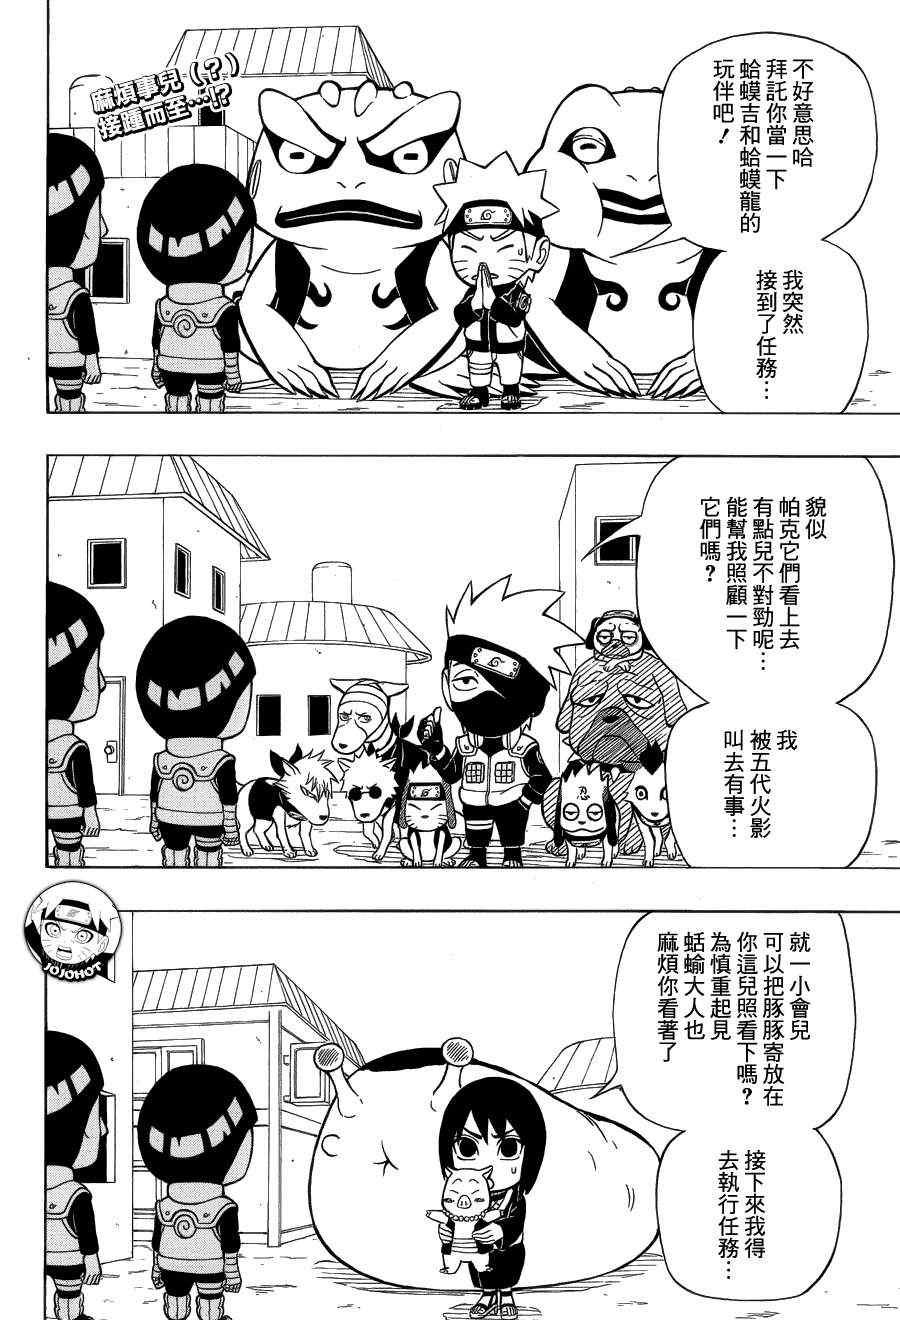 《洛克李之青春活力全开忍传》漫画 洛克李14集